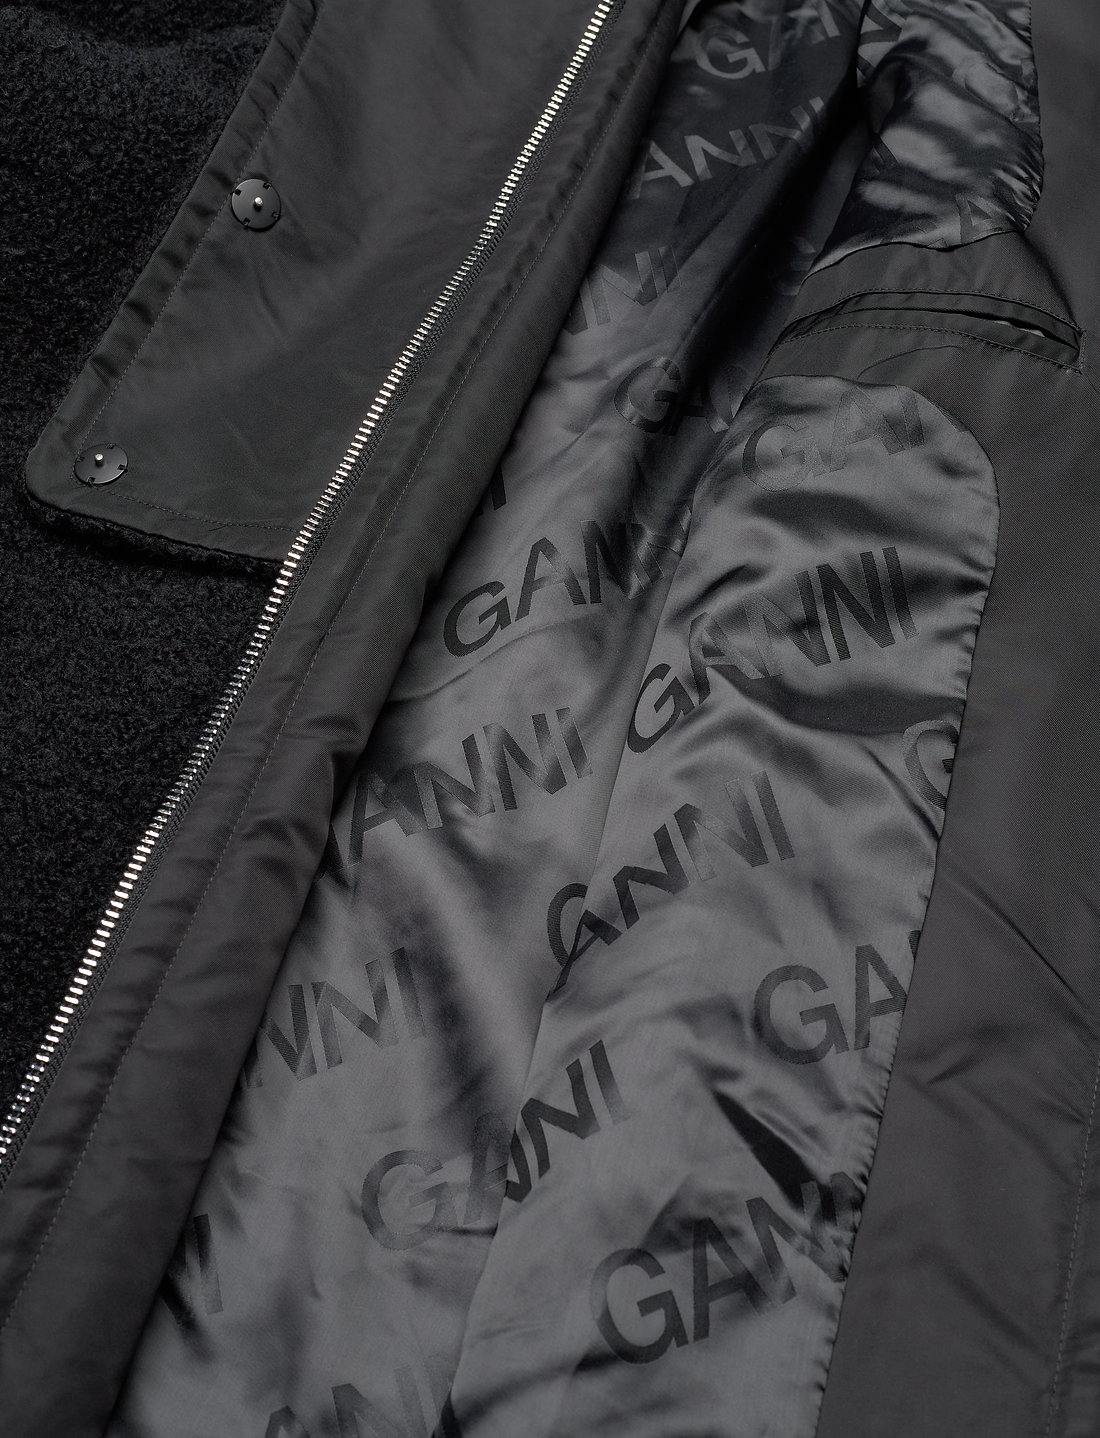 Ganni Wool Coat - 3299 kr. Køb Vinterfrakker fra Ganni online på Boozt.com. Hurtig levering & nem retur